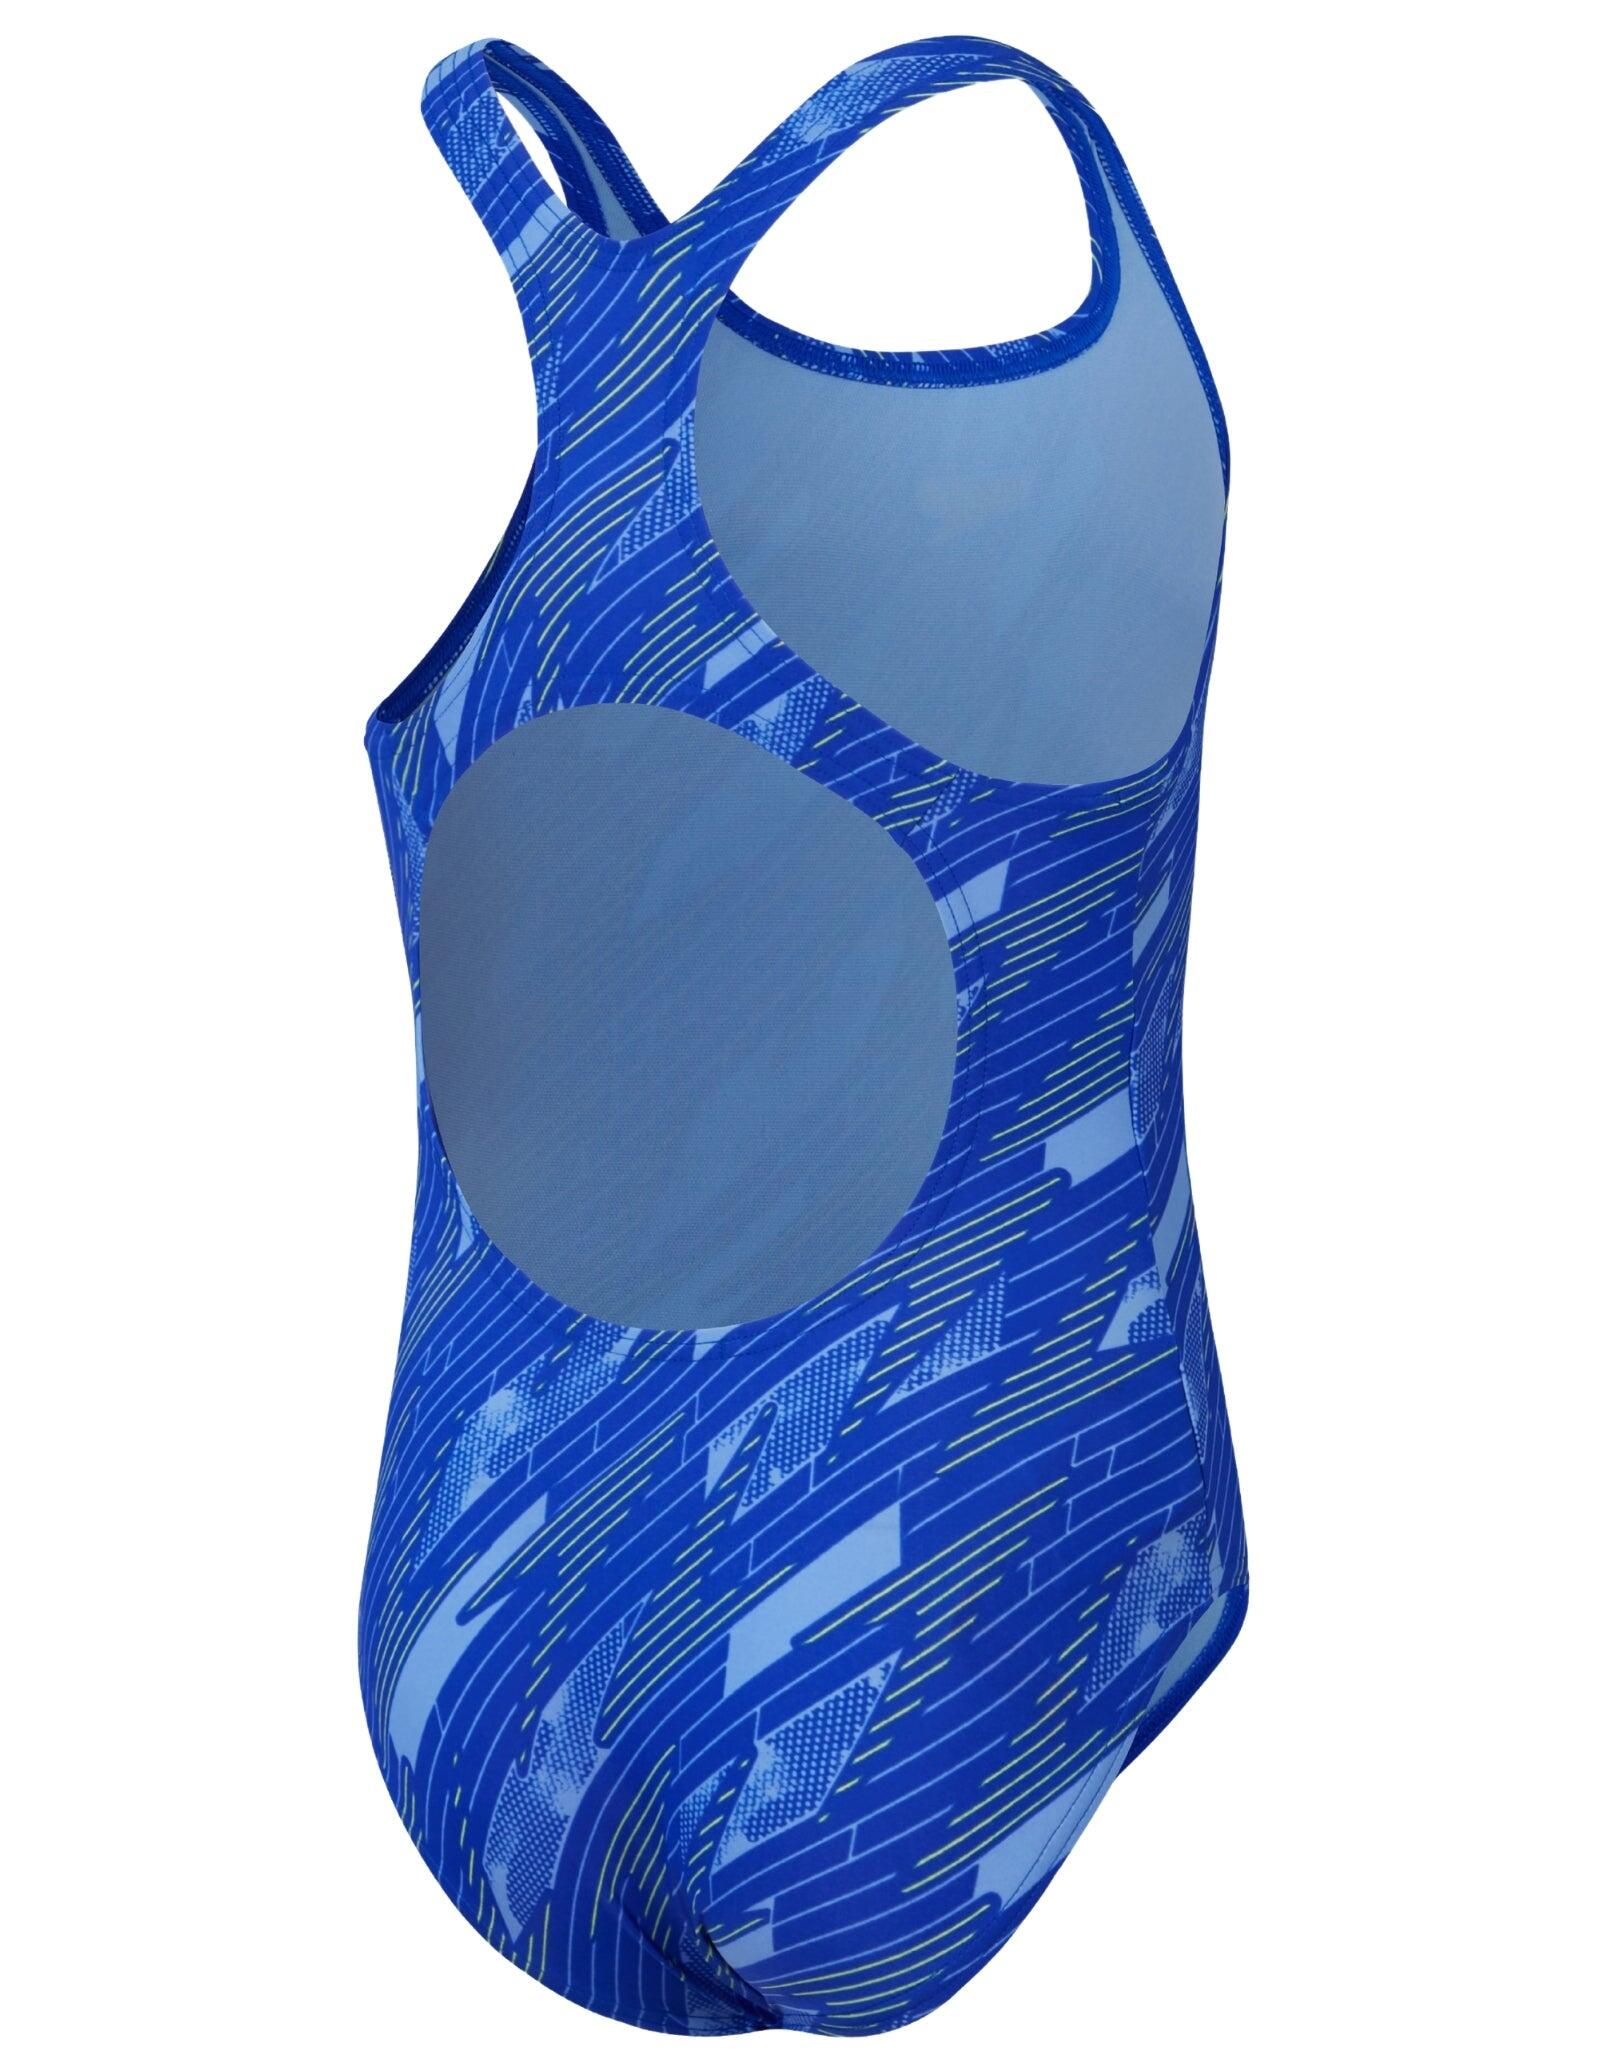 Speedo Girls Hyperboom Allover Medalist Swimsuit - Navy/Blue 2/5